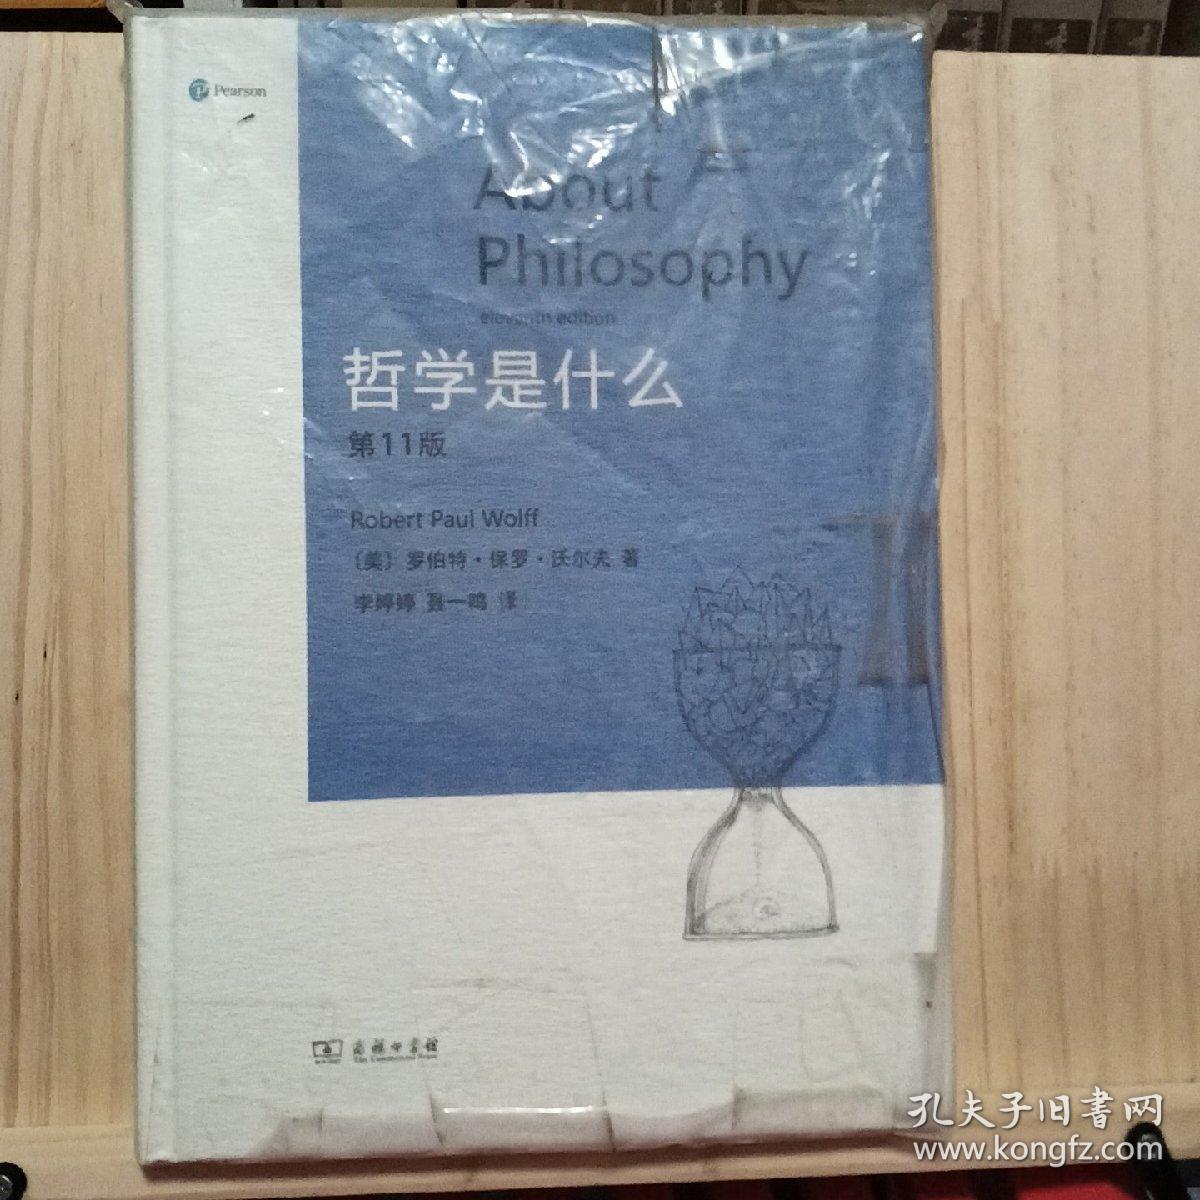 哲学是什么